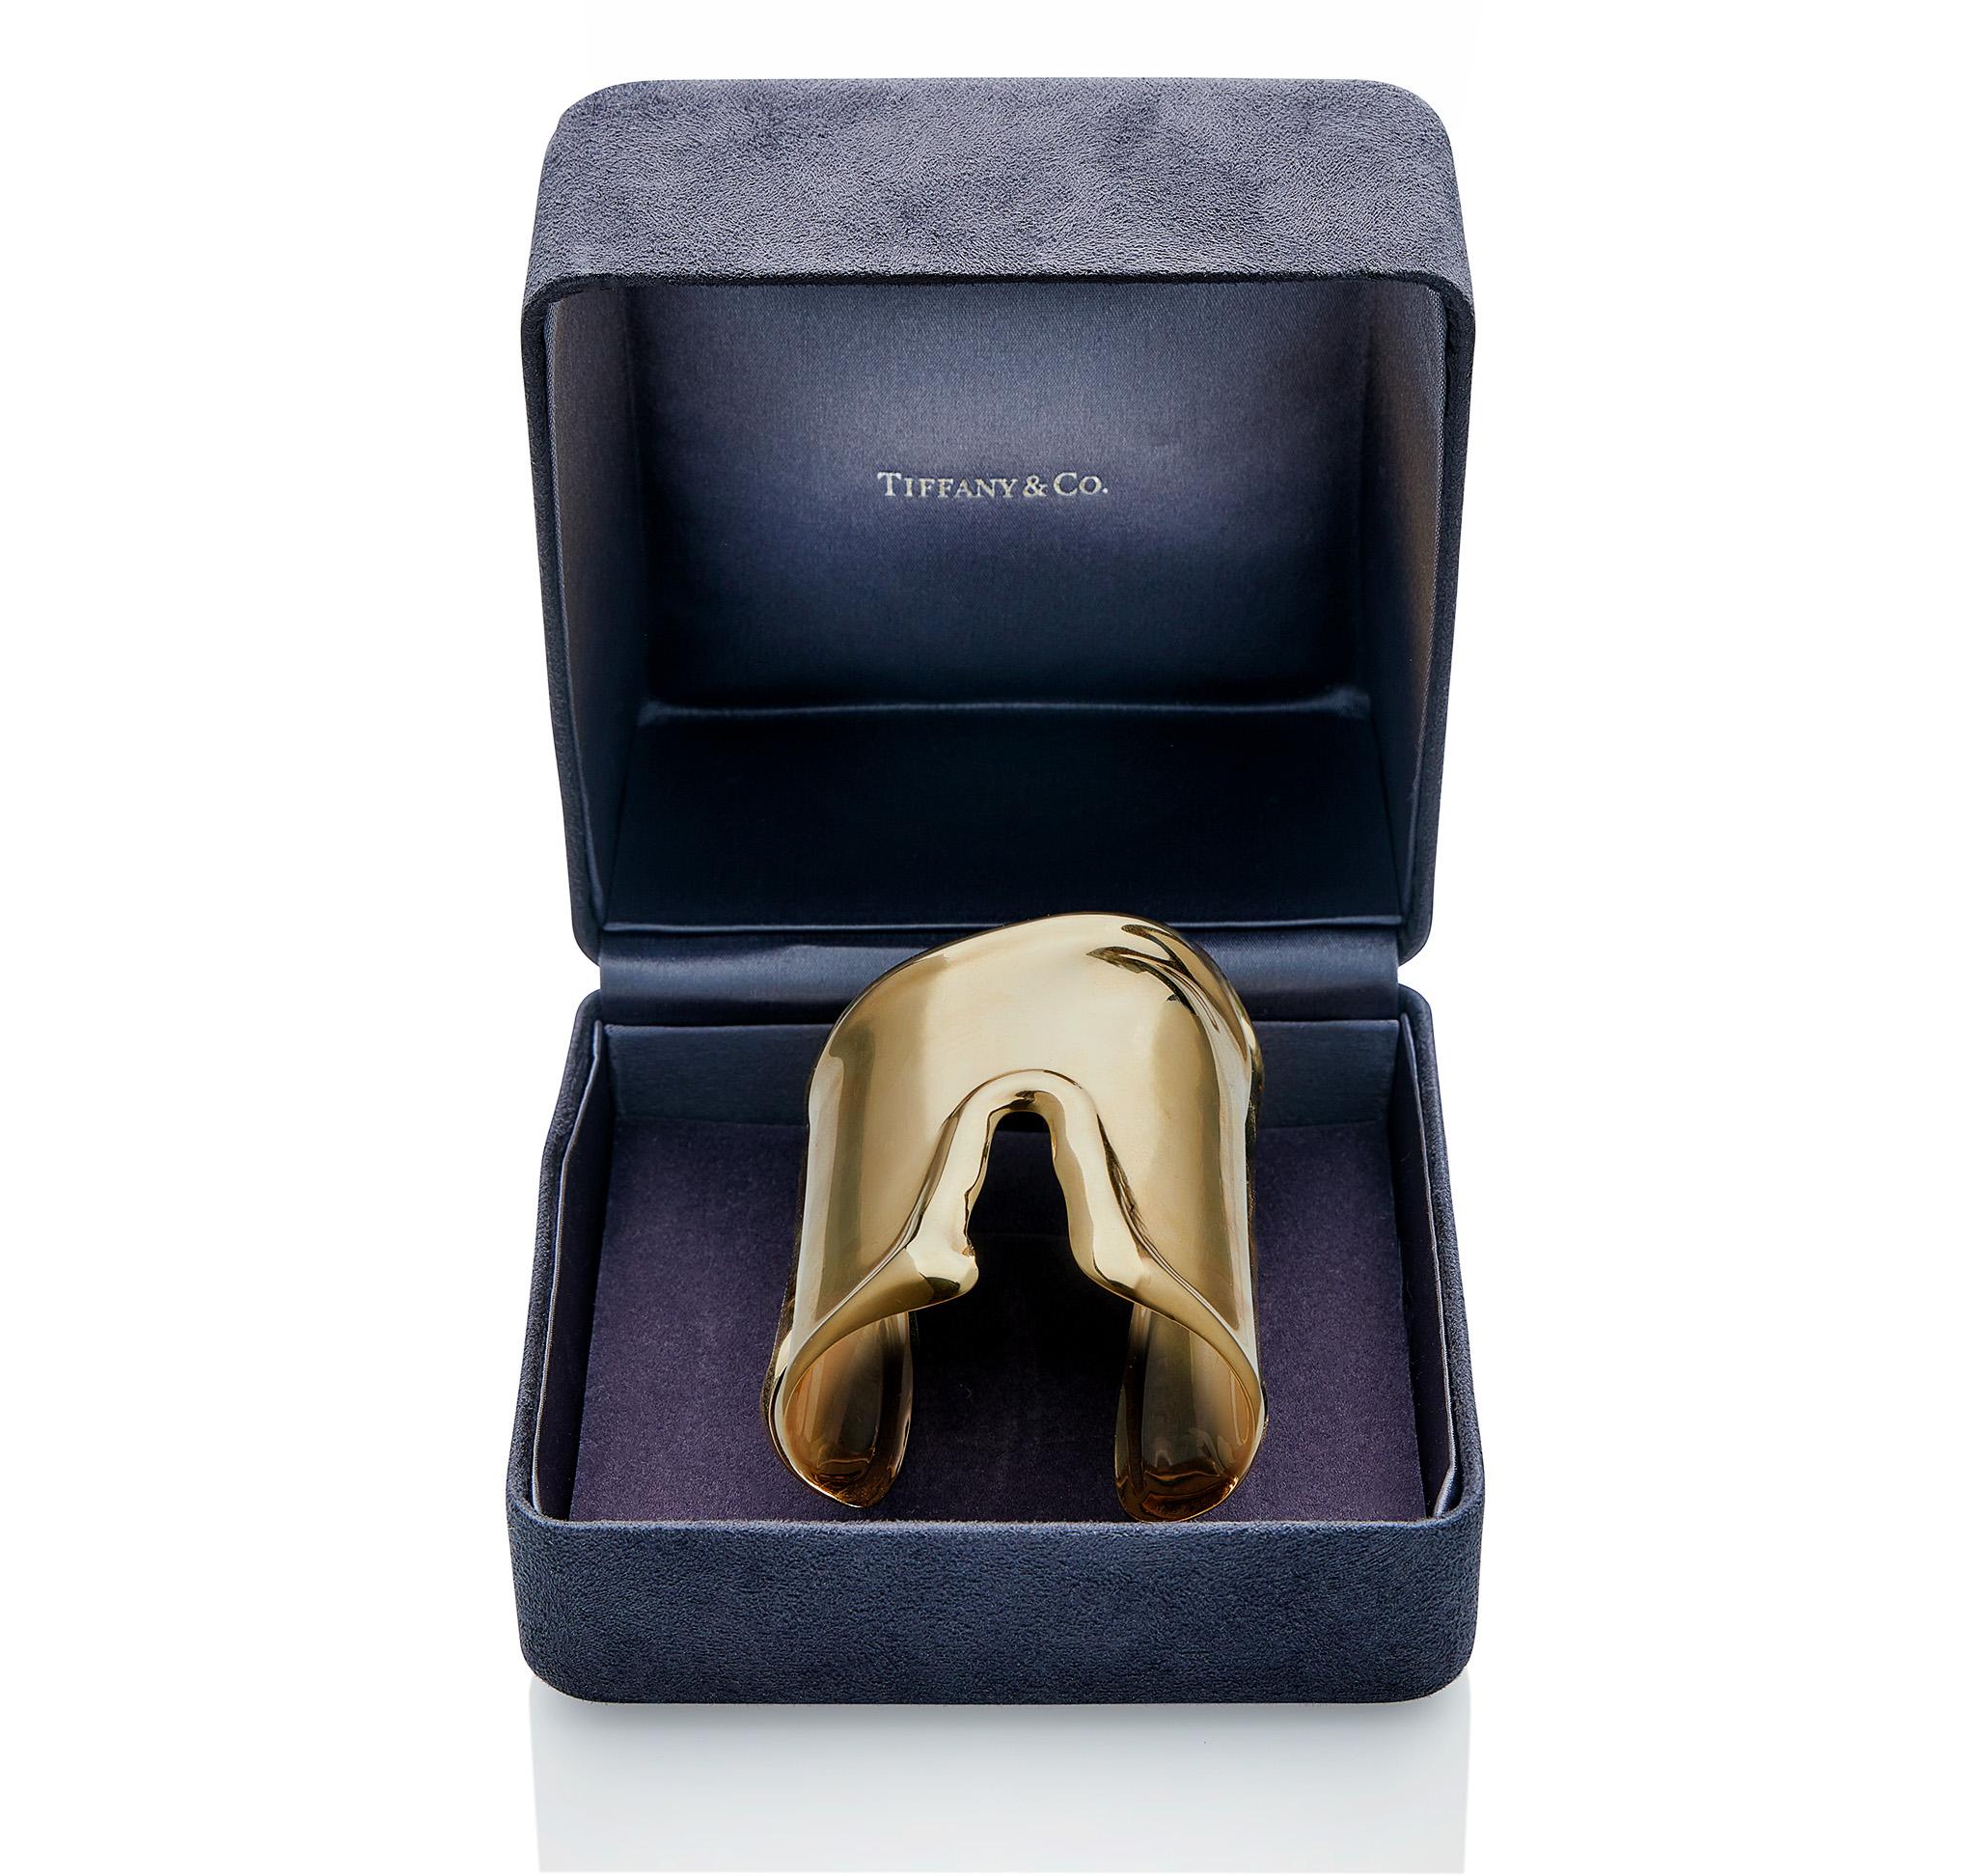 Dieses große Knochenarmband von Elsa Peretti für Tiffany & Co., das große Design in längerer Form, besteht aus 18 Karat Gold. Die Manschette ist anatomisch geformt und spiegelt mit ihren erhöhten Rändern die natürlichen Konturen des darunter